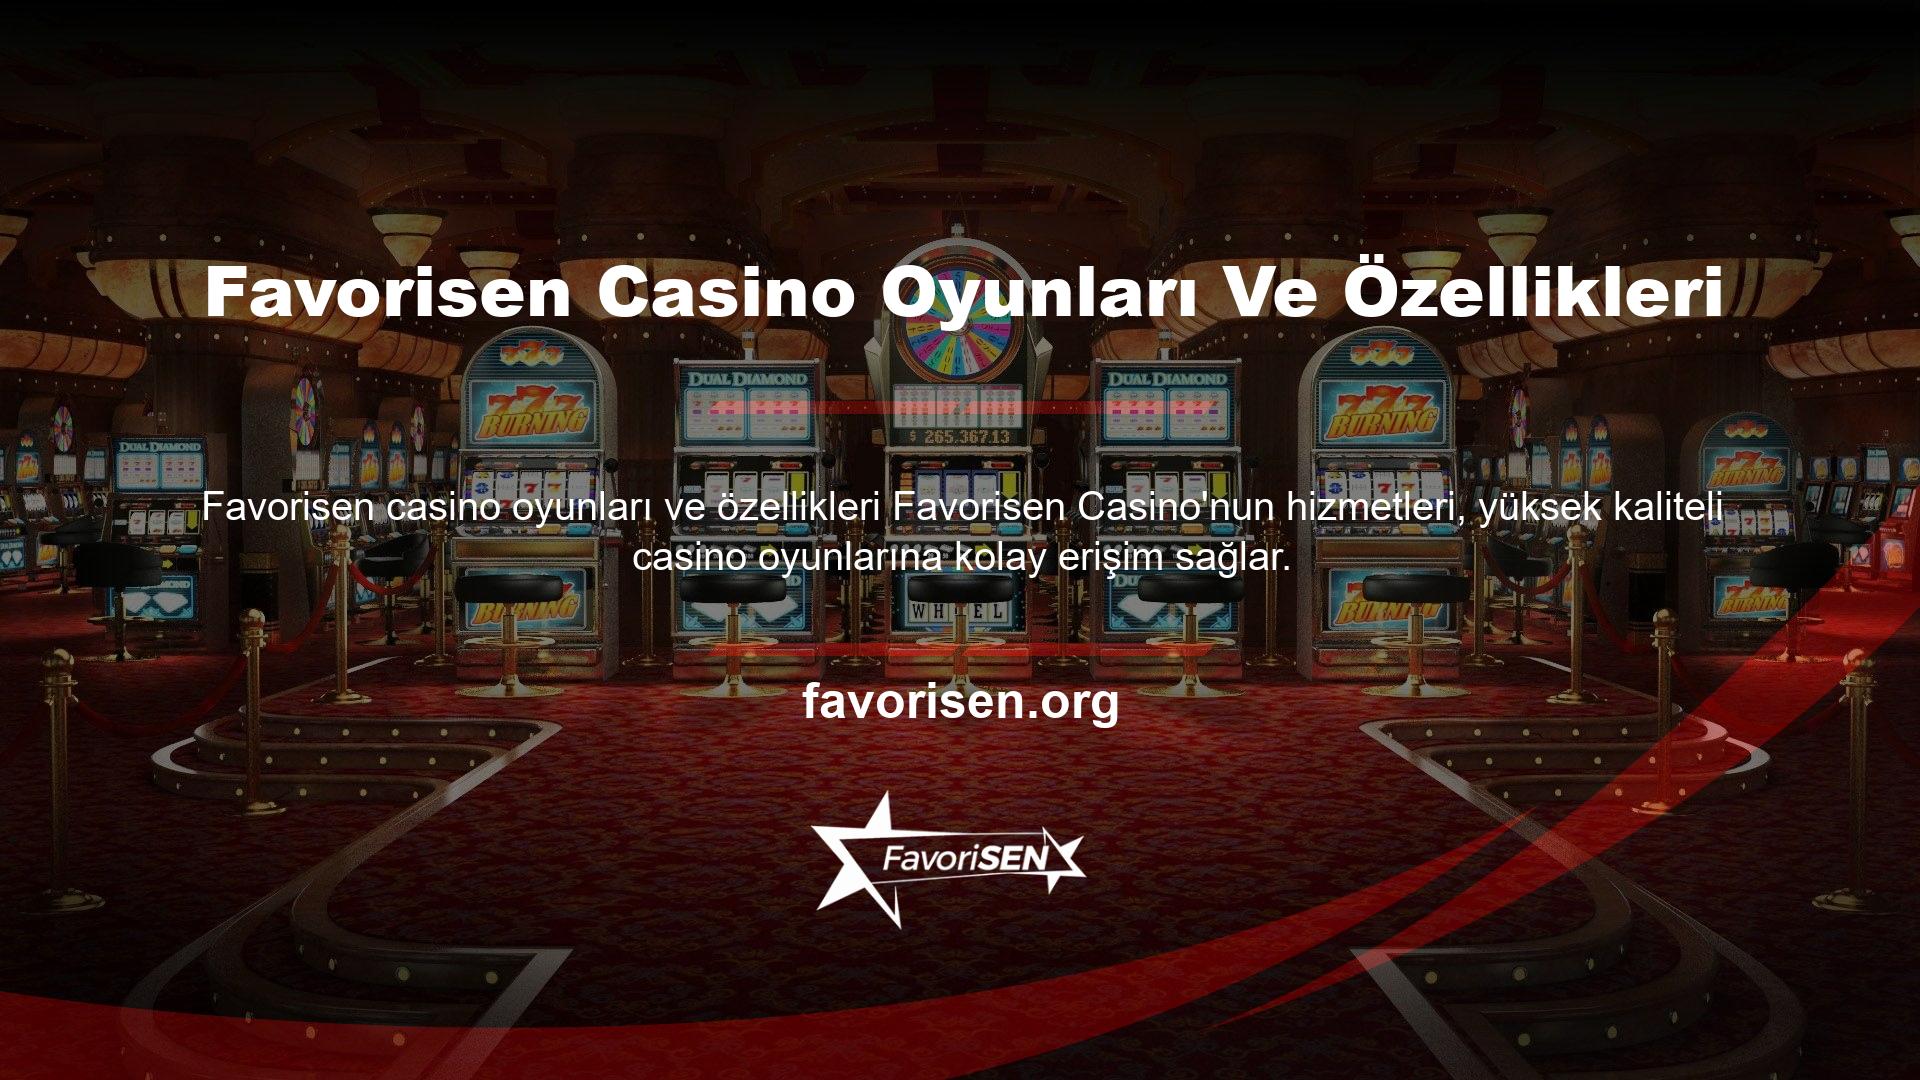 Casino hizmetleri veya jackpotlarla özel olarak sunulan bir tür slot makinesidir